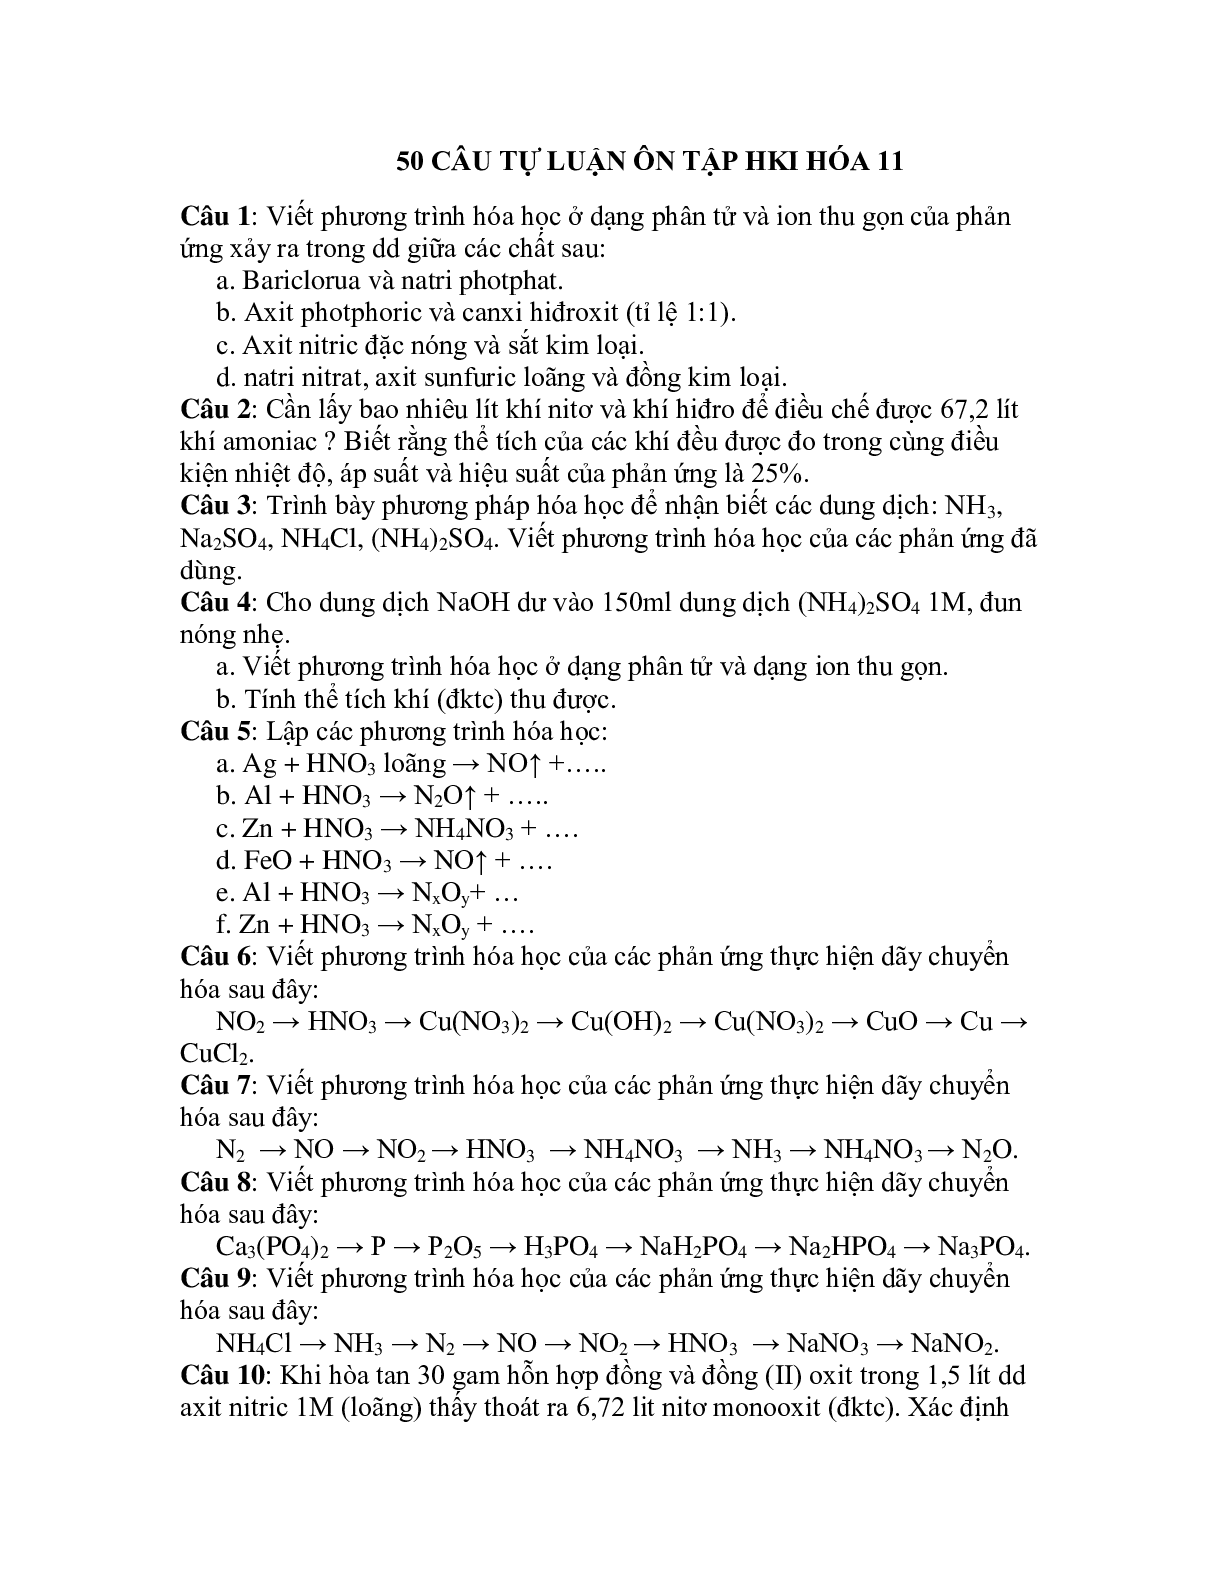 50 bài tập về ôn tập HK 2 lớp 11 chọn lọc (trang 1)